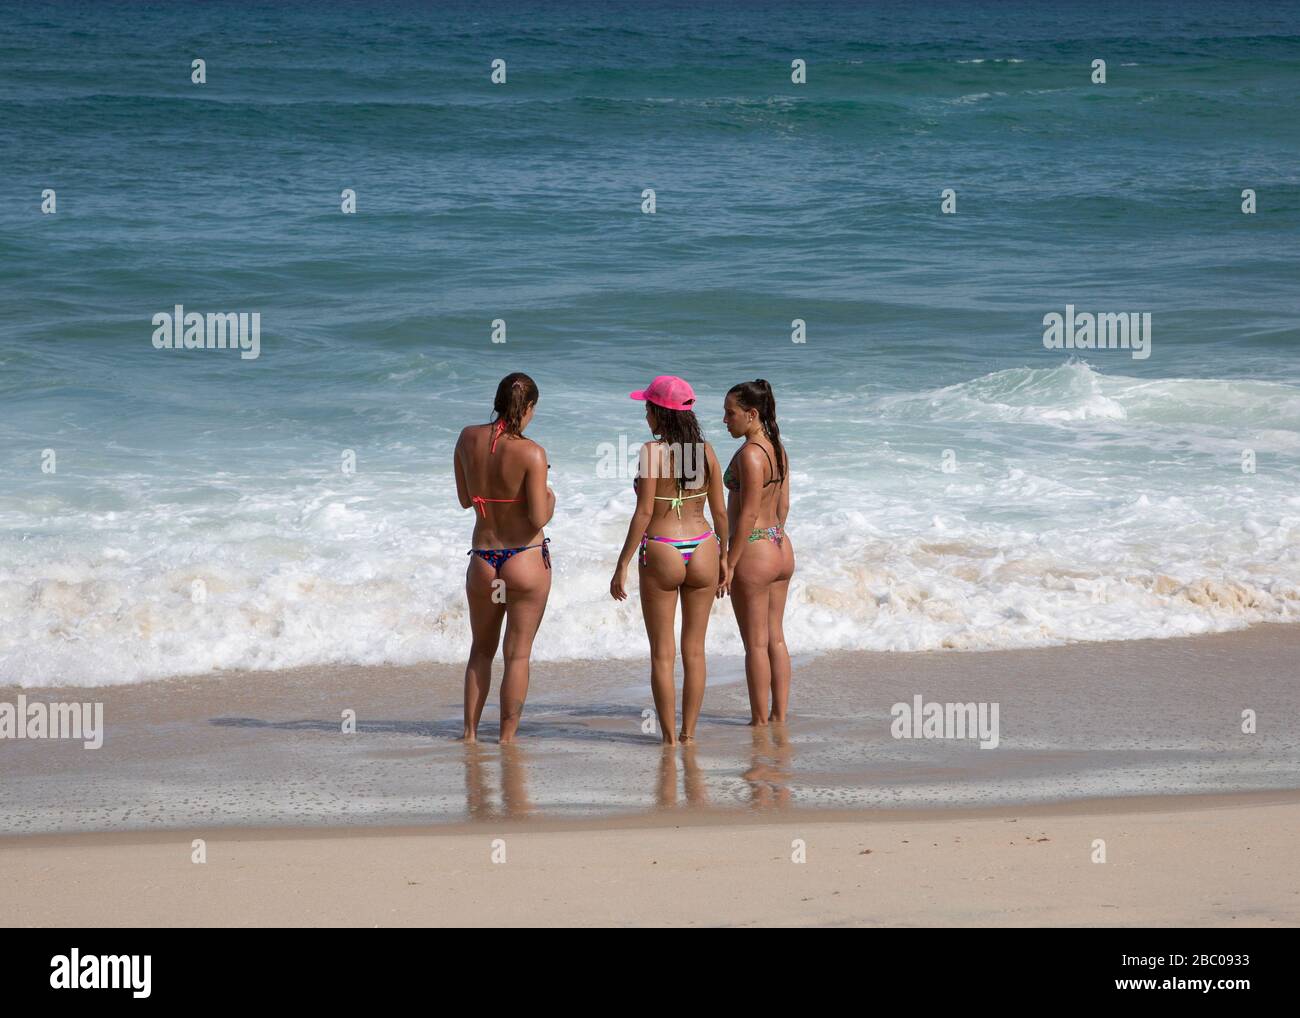 Brasileñas en bikini fotografías e imágenes de alta resolución - Alamy